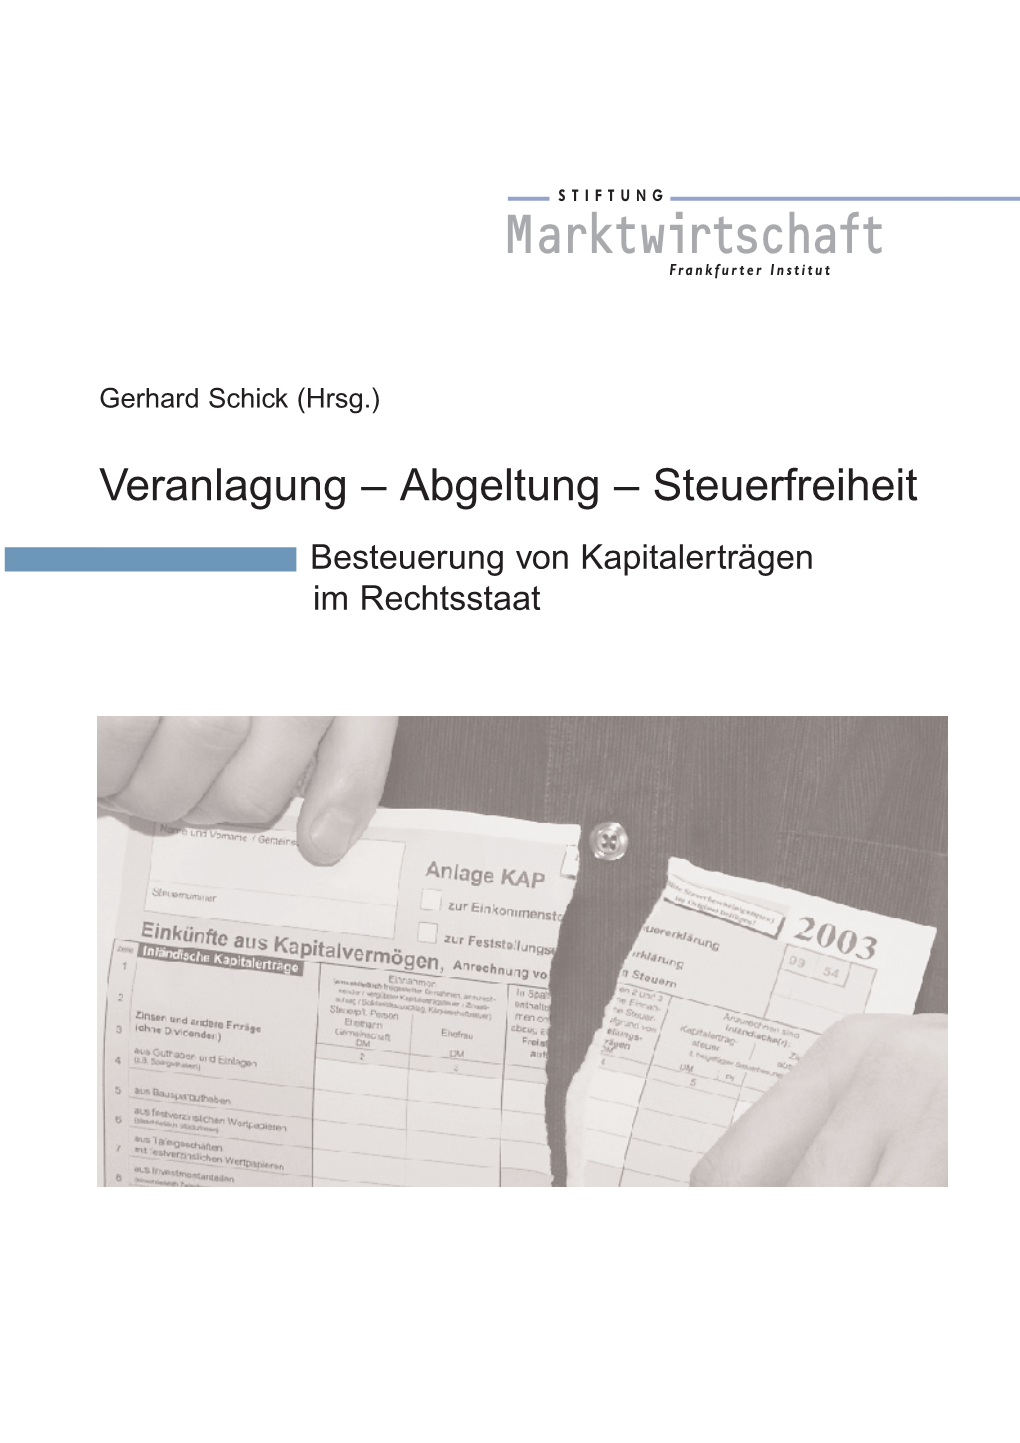 Veranlagung – Abgeltung – Steuerfreiheit Besteuerung Von Kapitalerträgen Im Rechtsstaat 2 Gerhard Schick (Hrsg.)